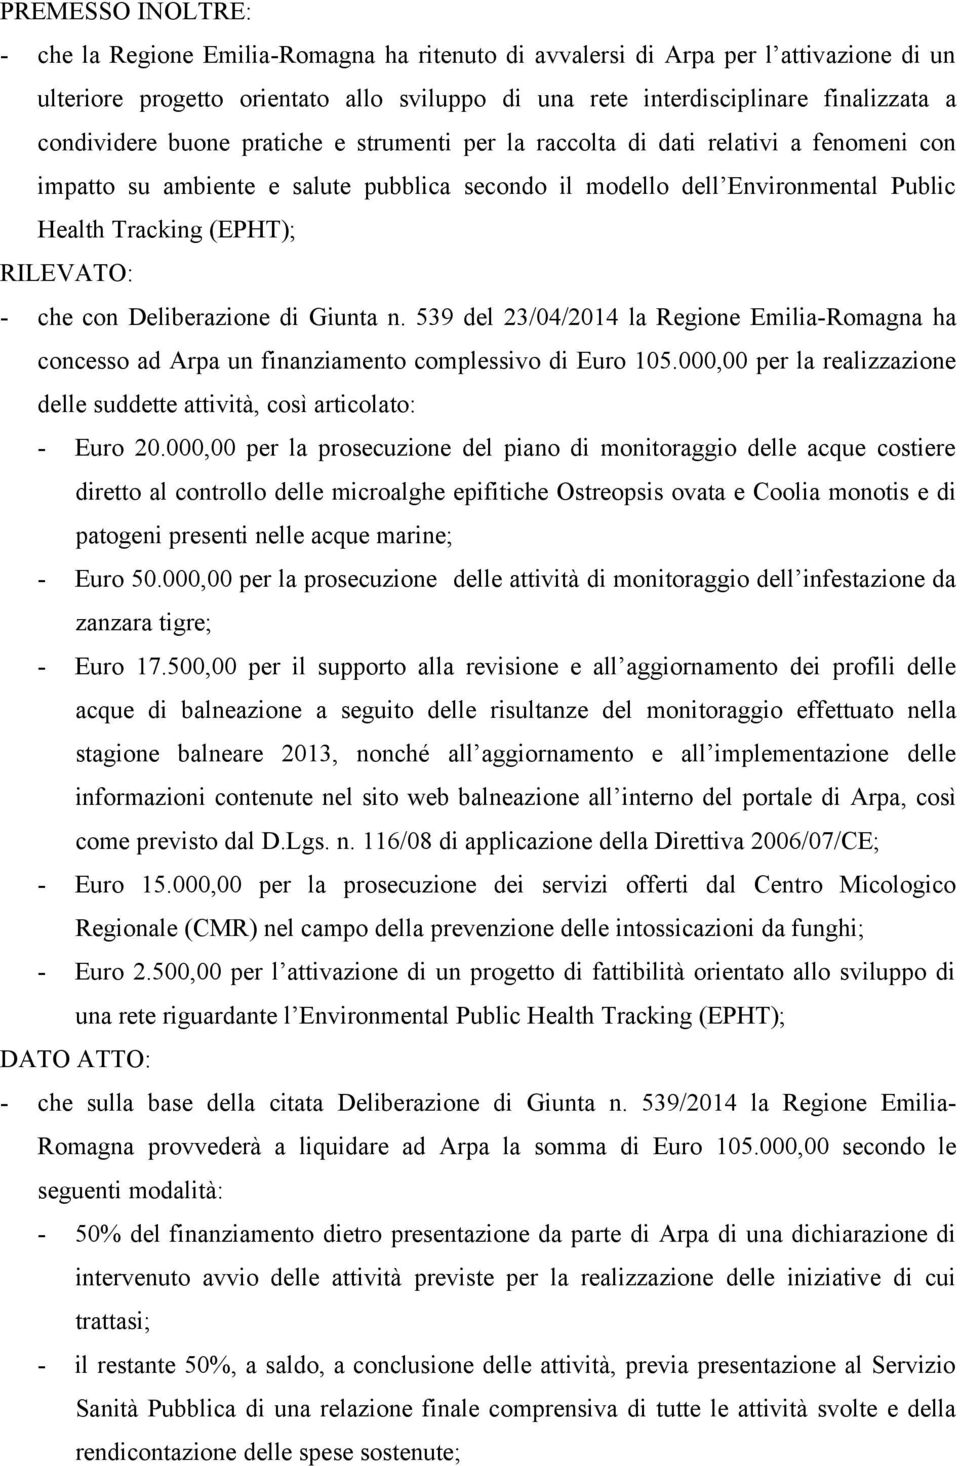 RILEVATO: - che con Deliberazione di Giunta n. 539 del 23/04/2014 la Regione Emilia-Romagna ha concesso ad Arpa un finanziamento complessivo di Euro 105.